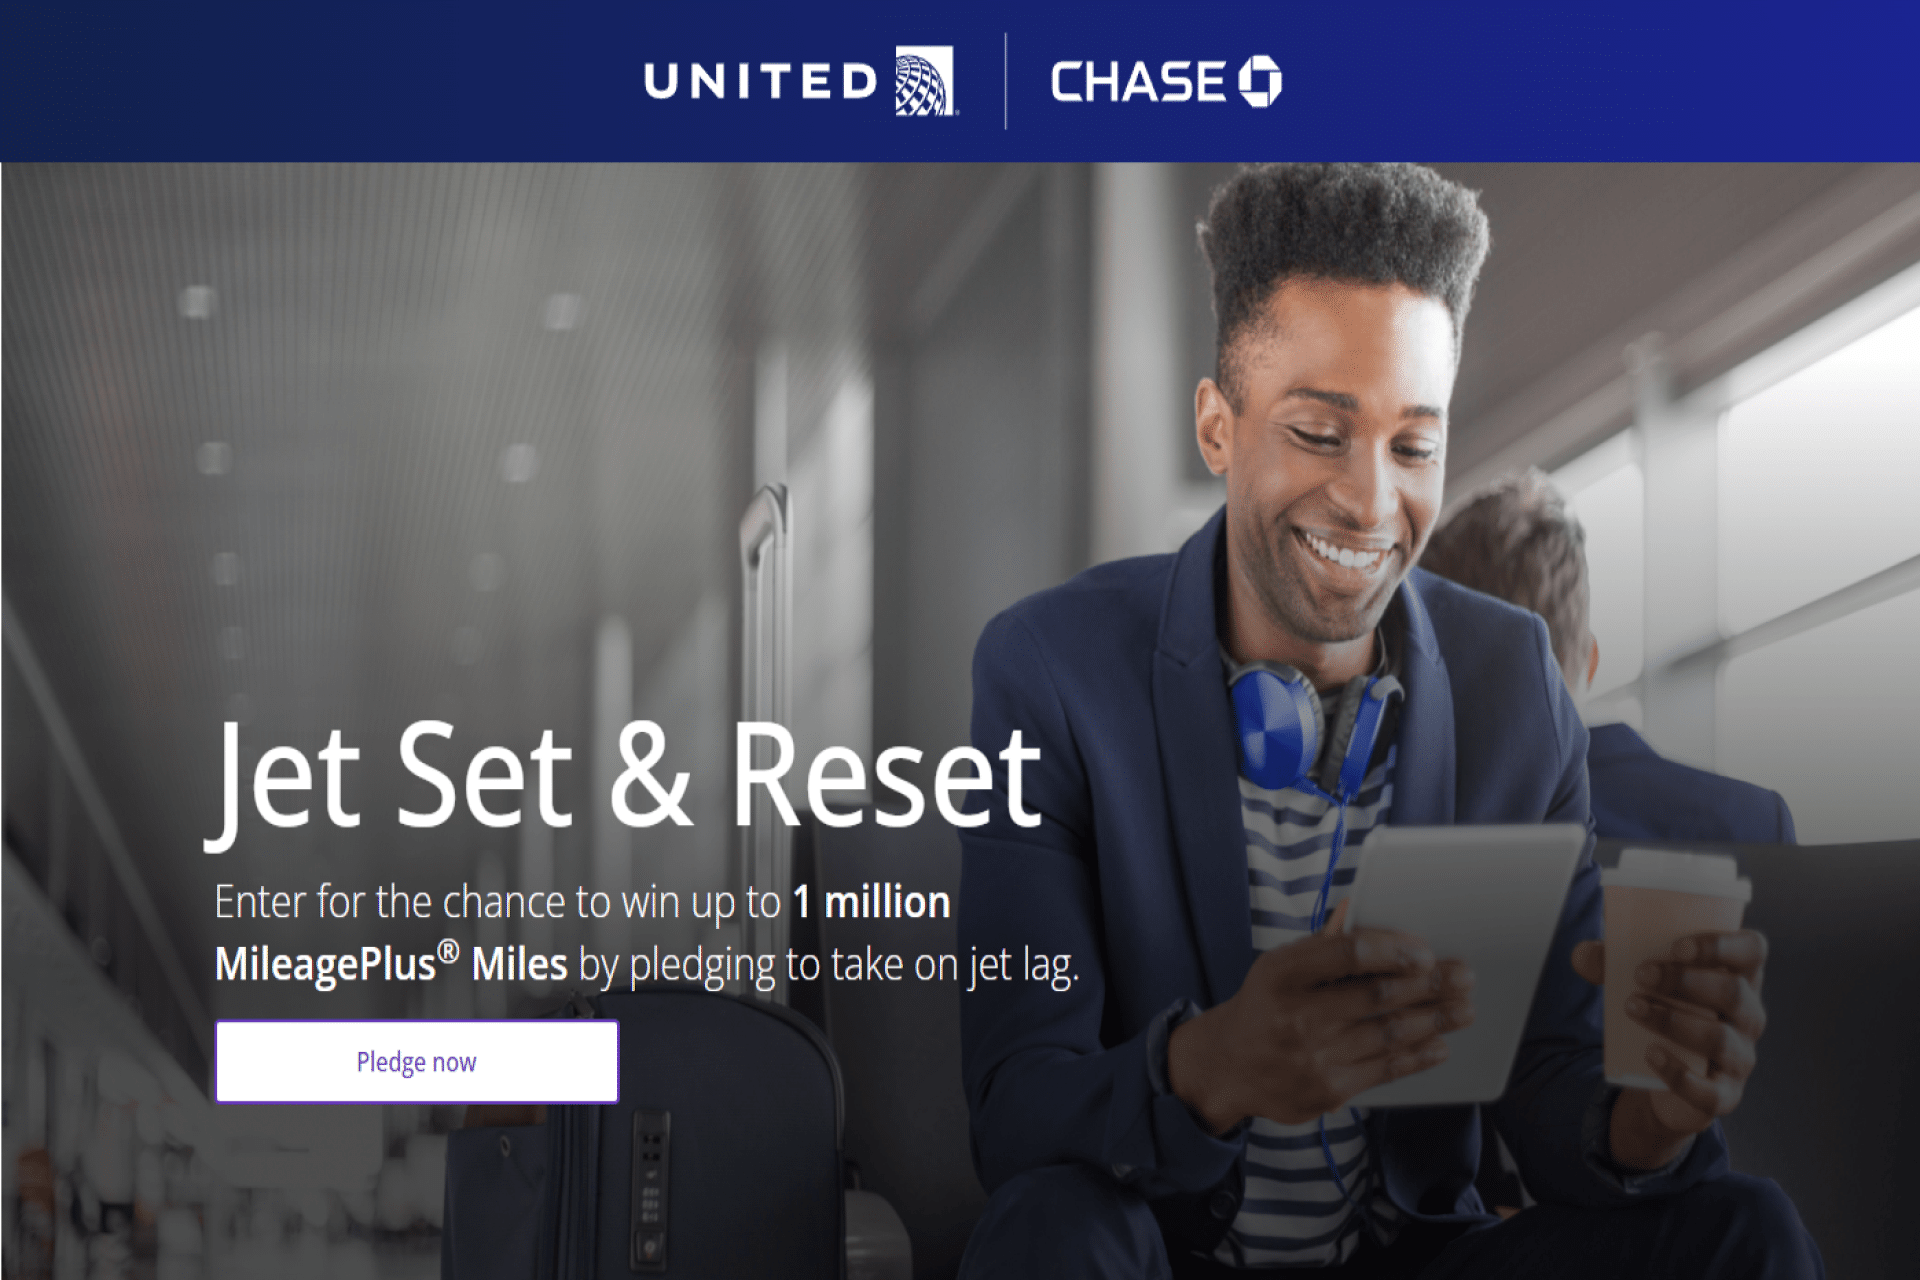 chase-united-launch-jet-set-reset-pledge